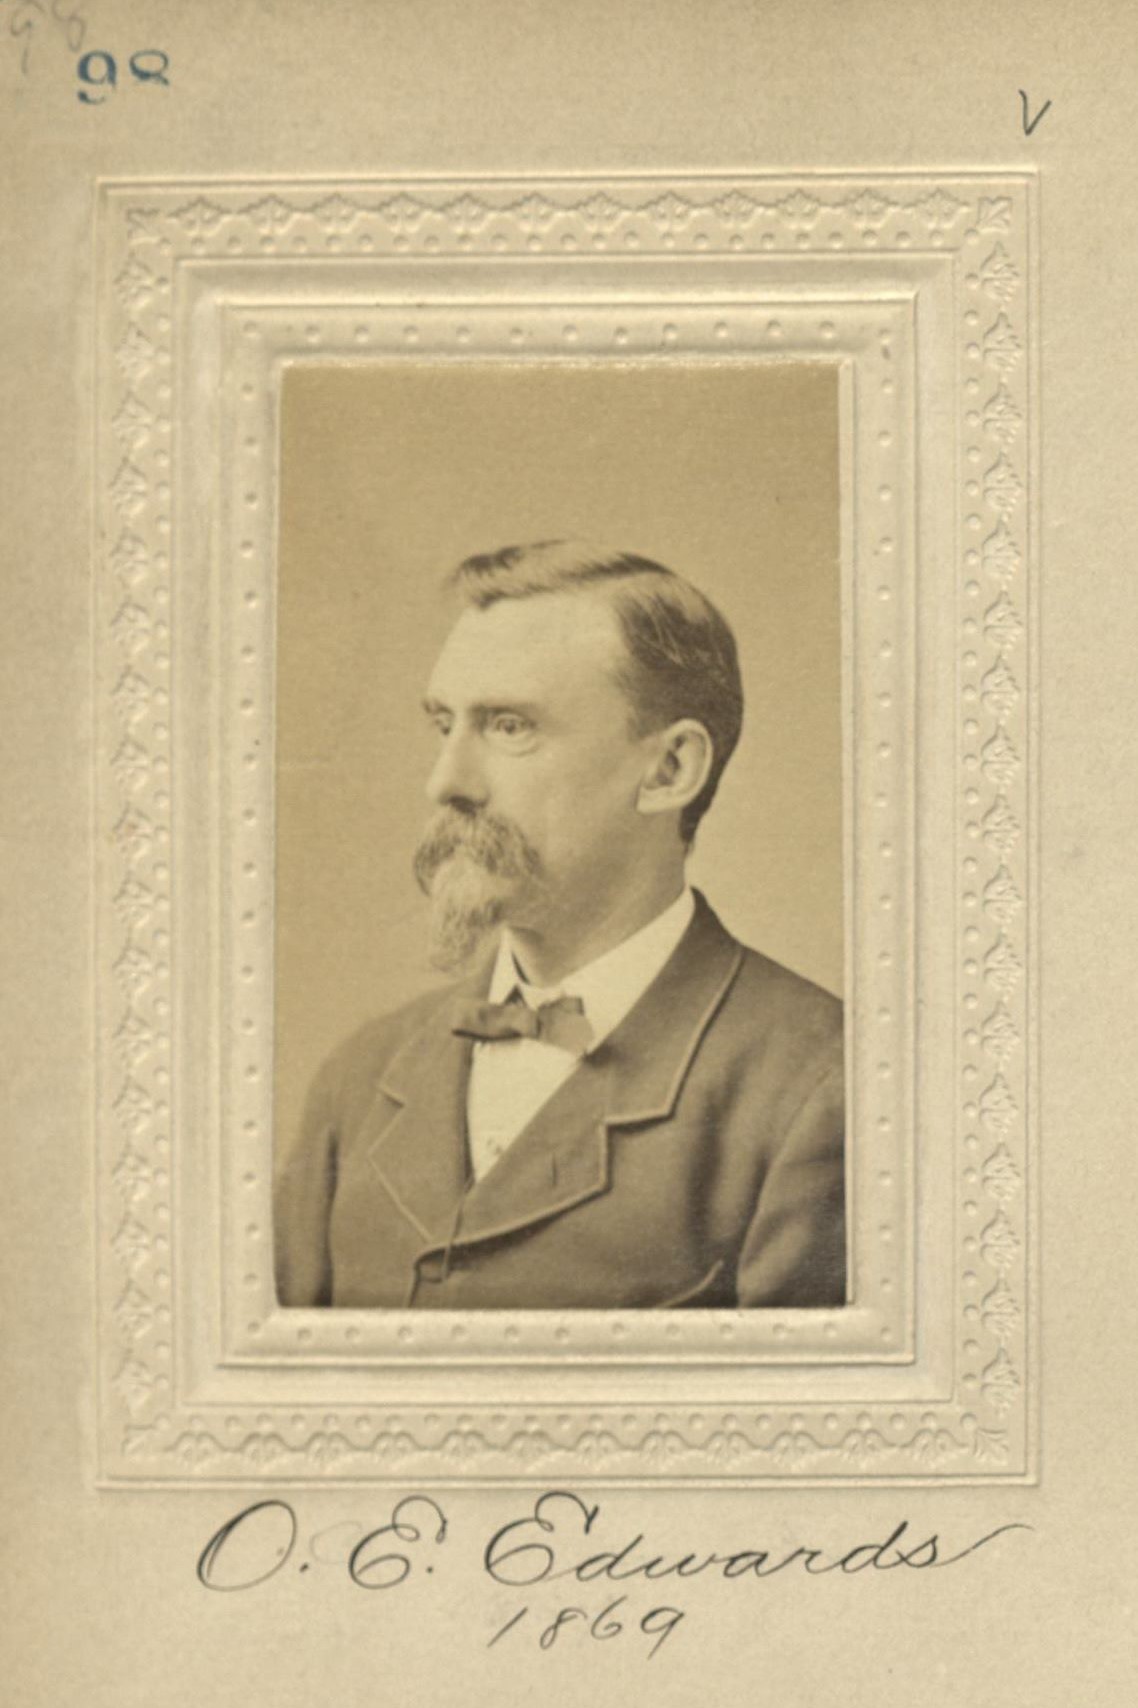 Member portrait of Ogden E. Edwards